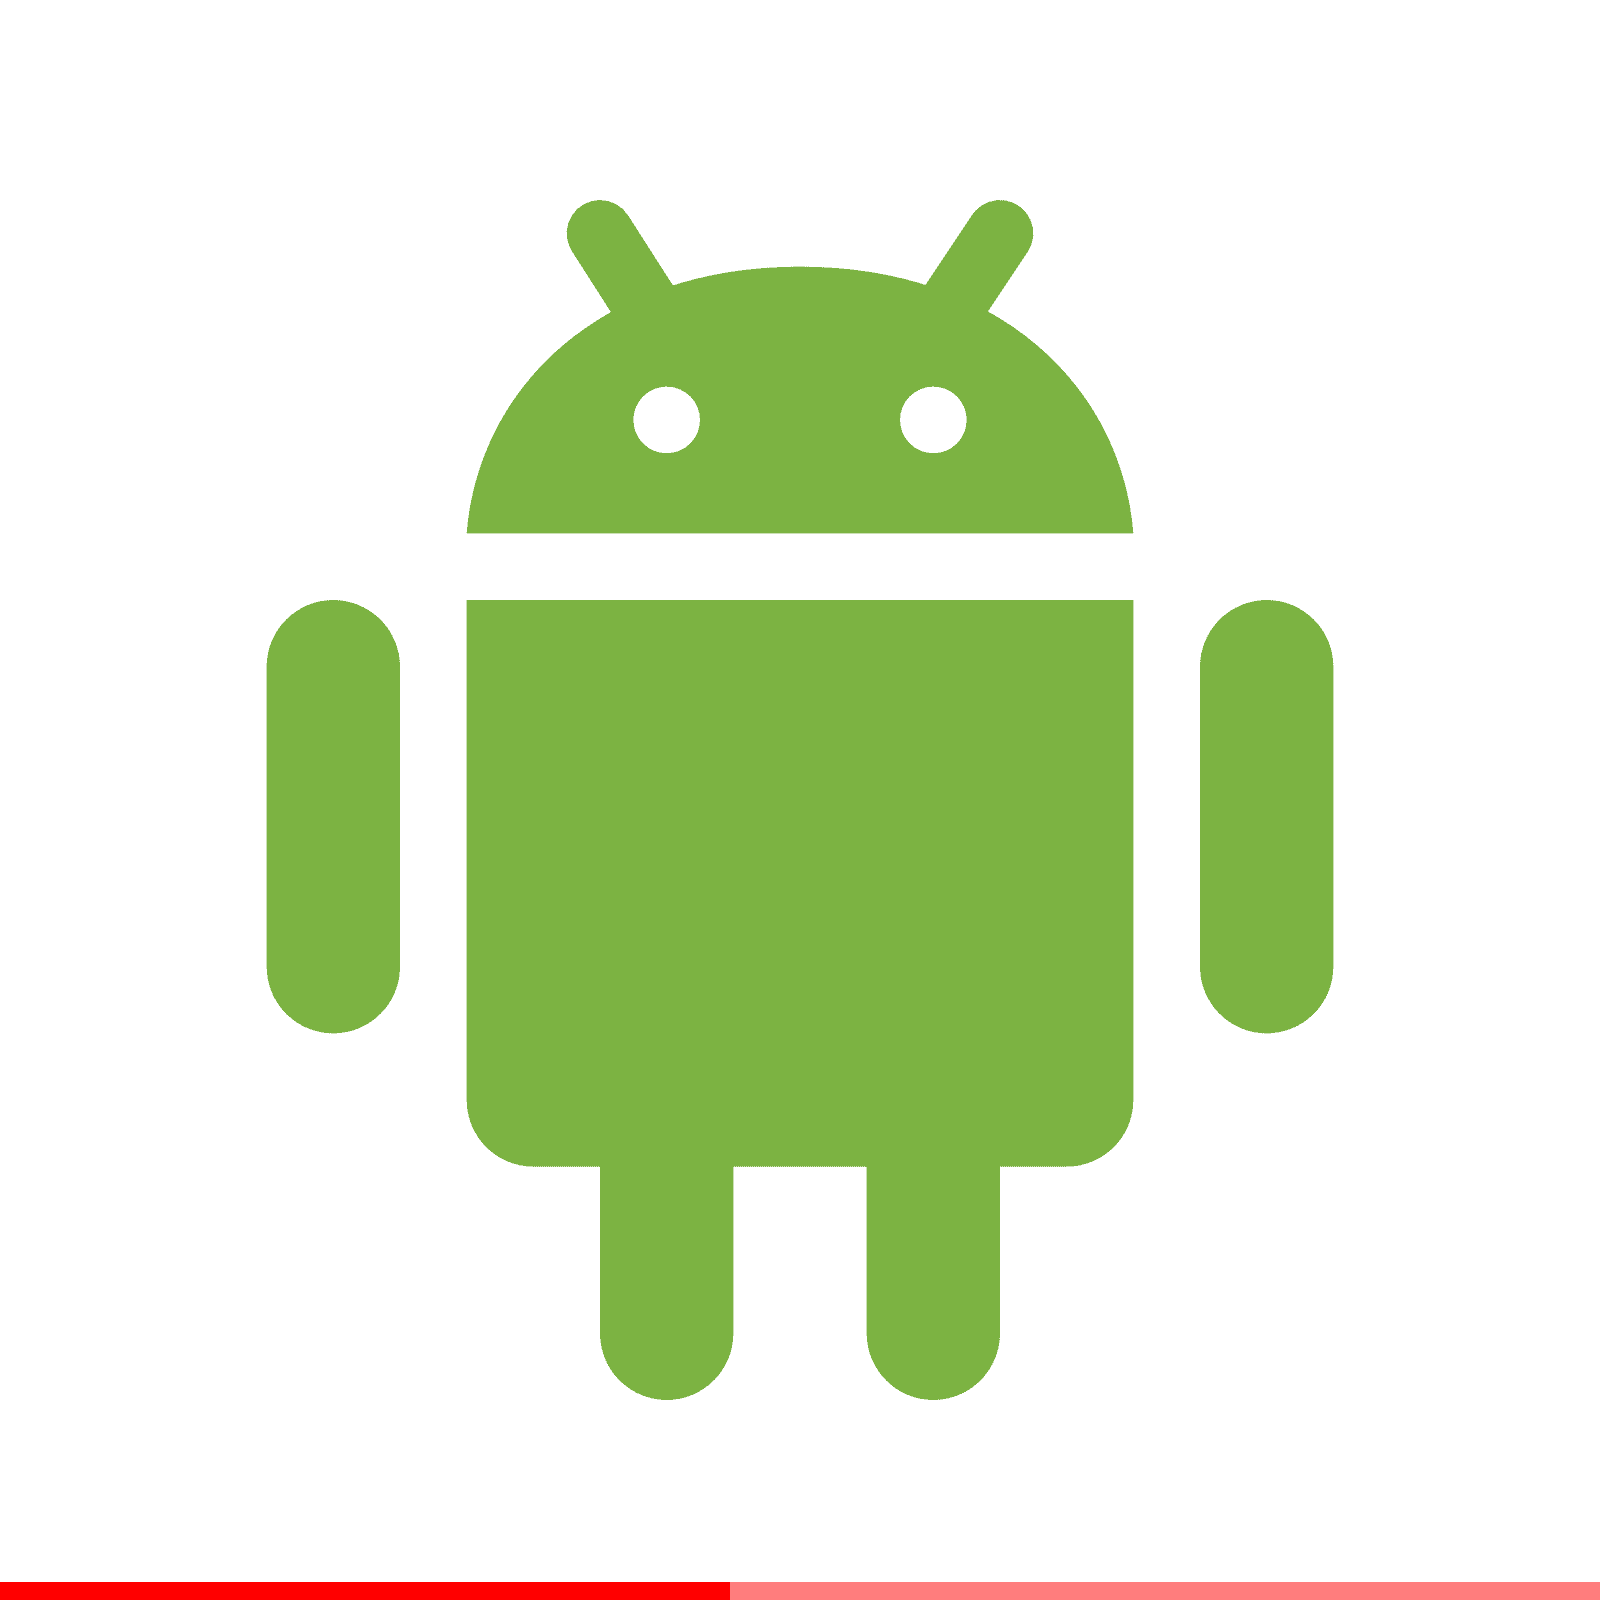 Usando el ProgressBar en Android para indicar procesos de carga